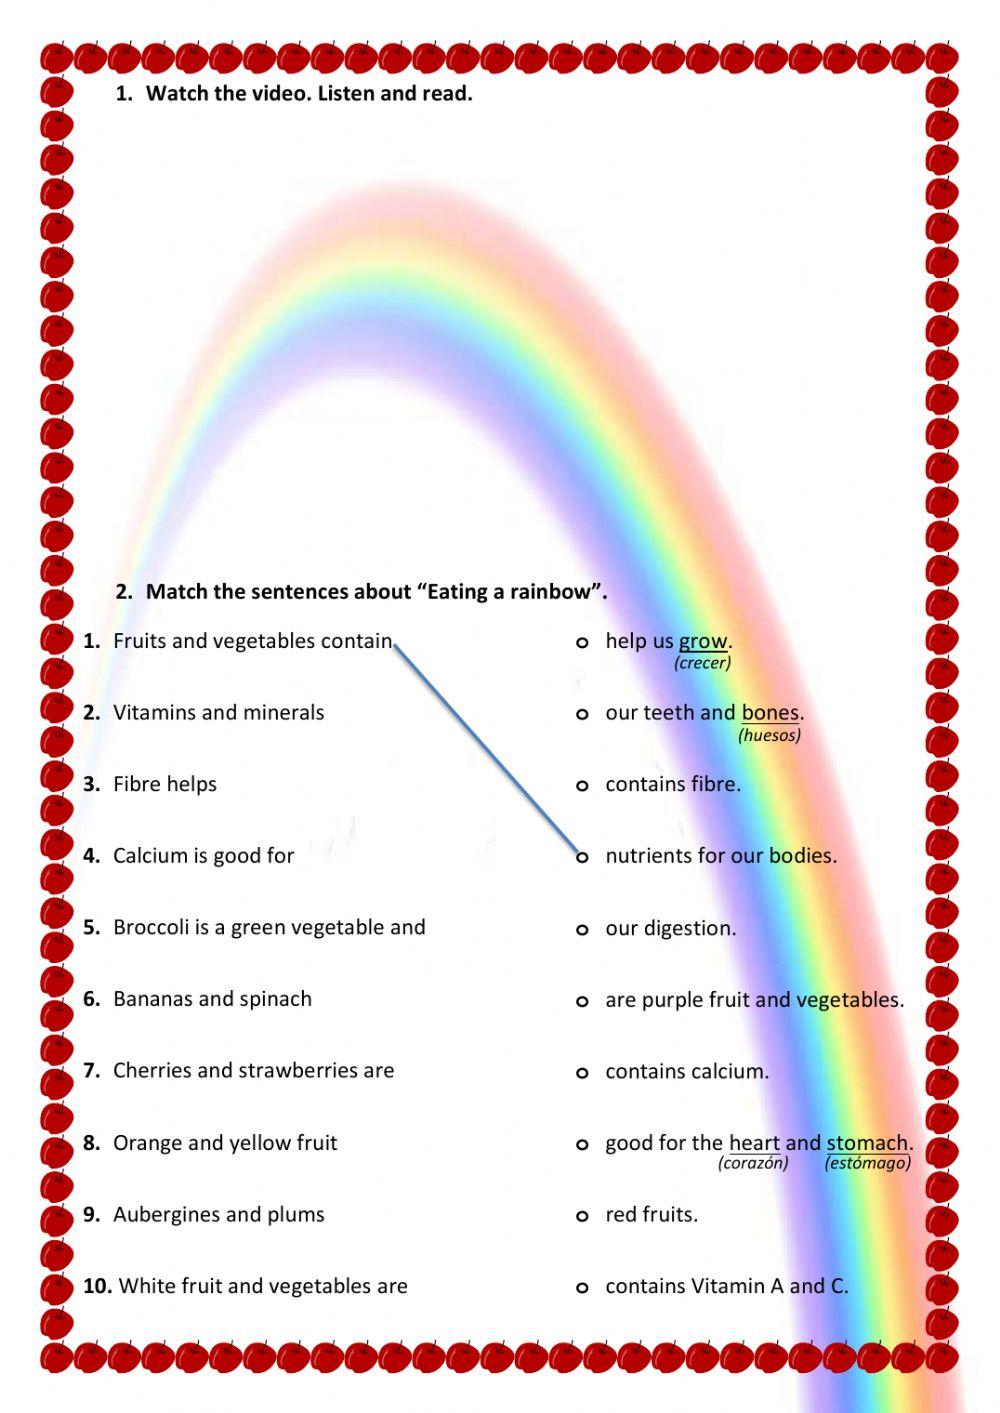 Eating a rainbow